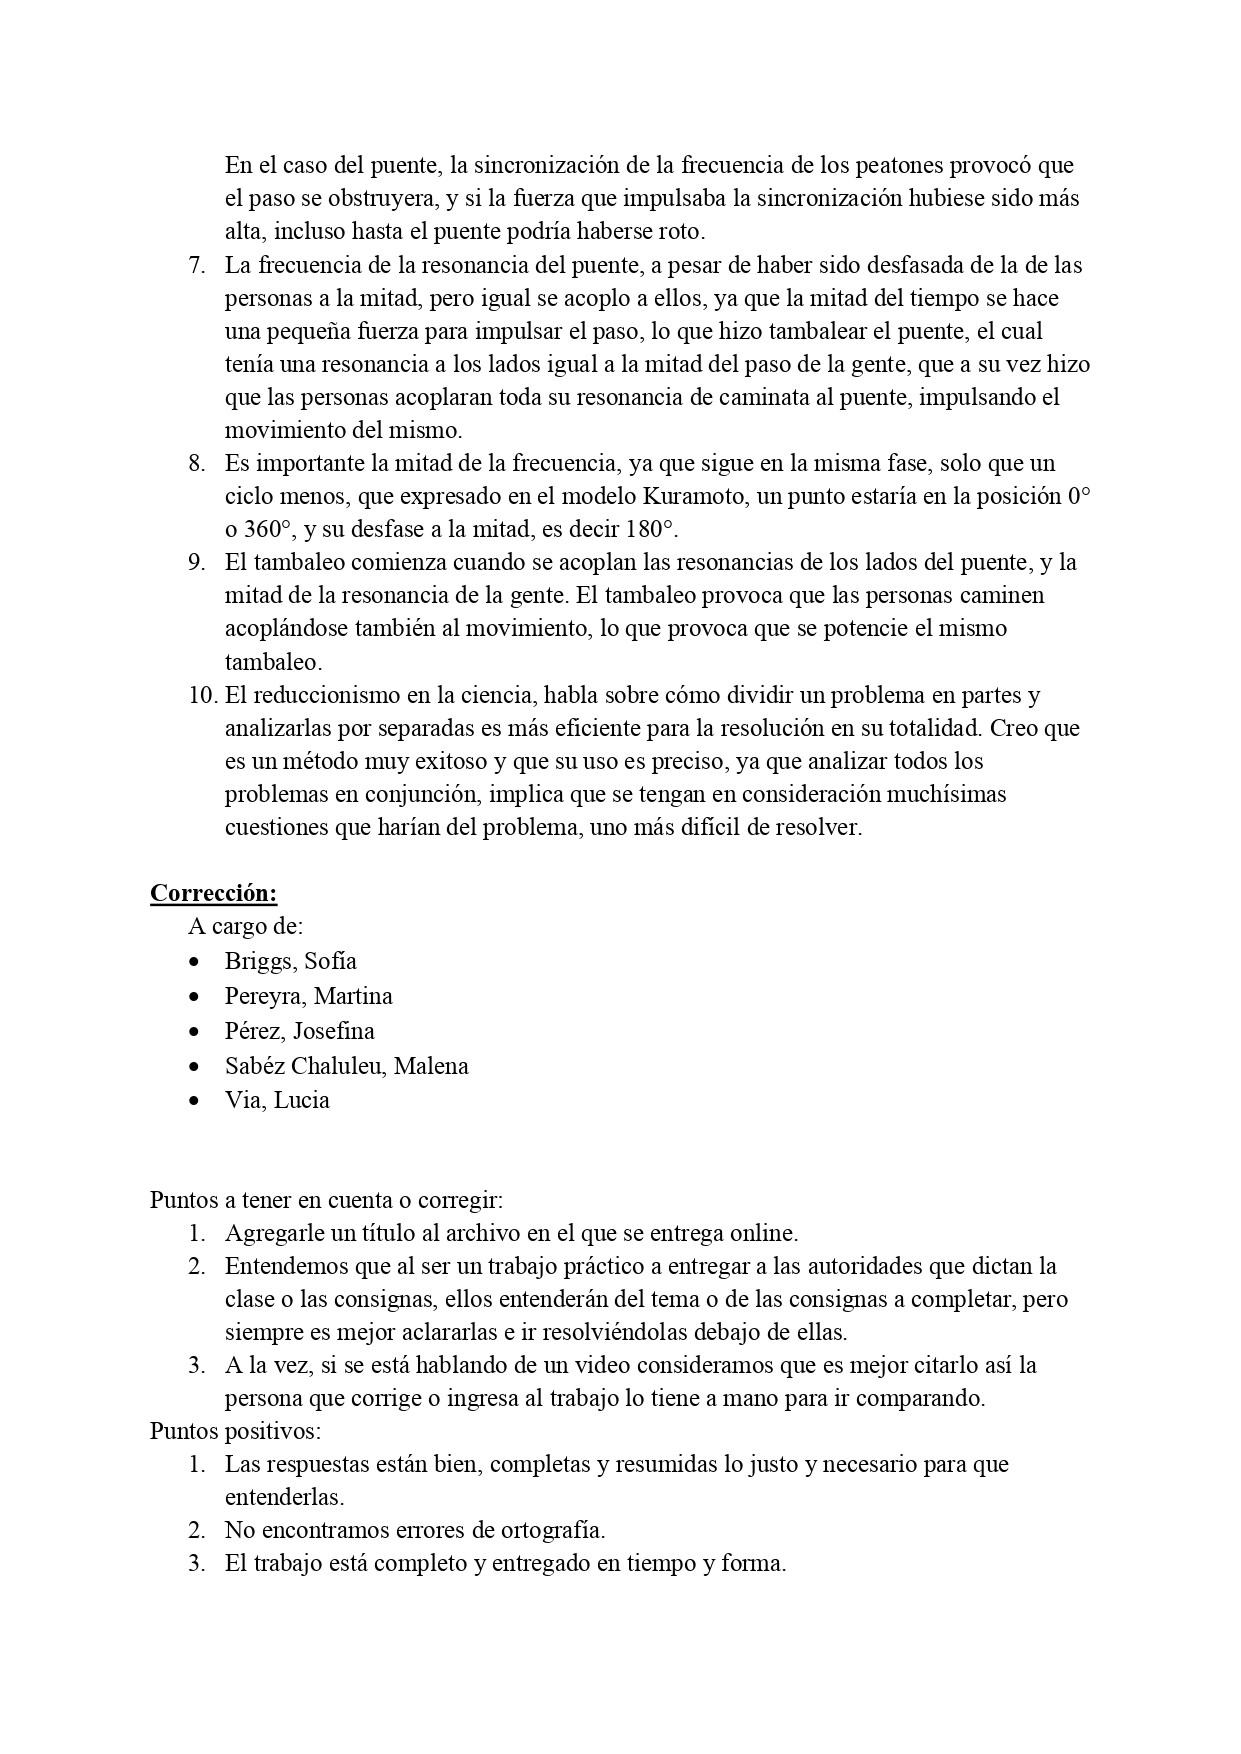 TP3 Sincronización - Redonditos de Ricota - Corregido_page-0002.jpg